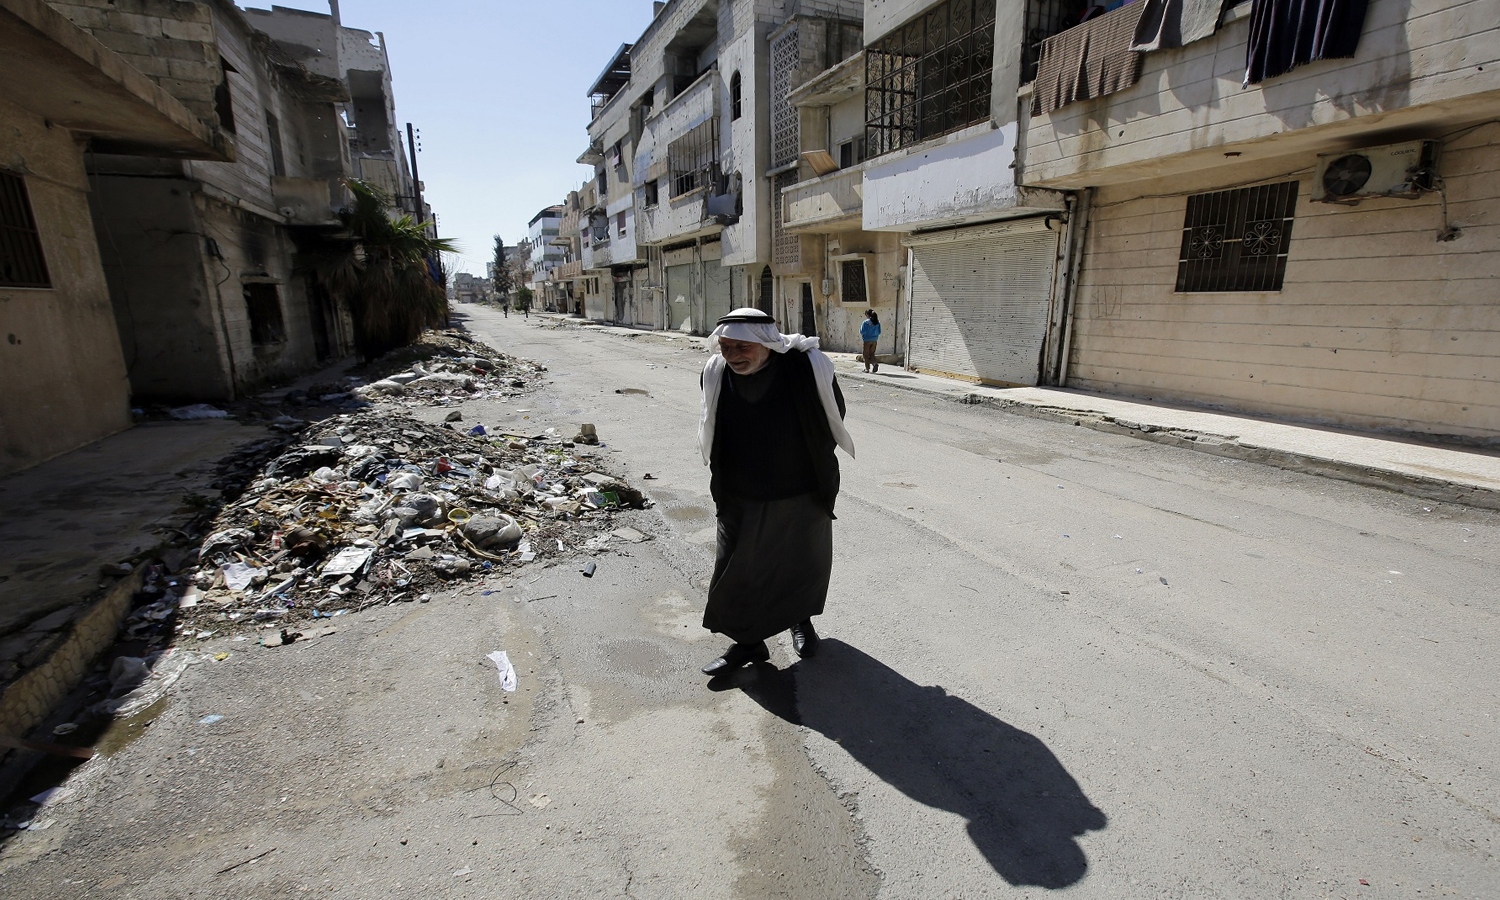 رجل مسن سوري يمشي في إحدى الأحياء السكنية في مدينة حمص بعد أن خرج منها أكثر من 2000 مدني حين انفك الحصار عنها- 12 من شباط 2015 AFP))
